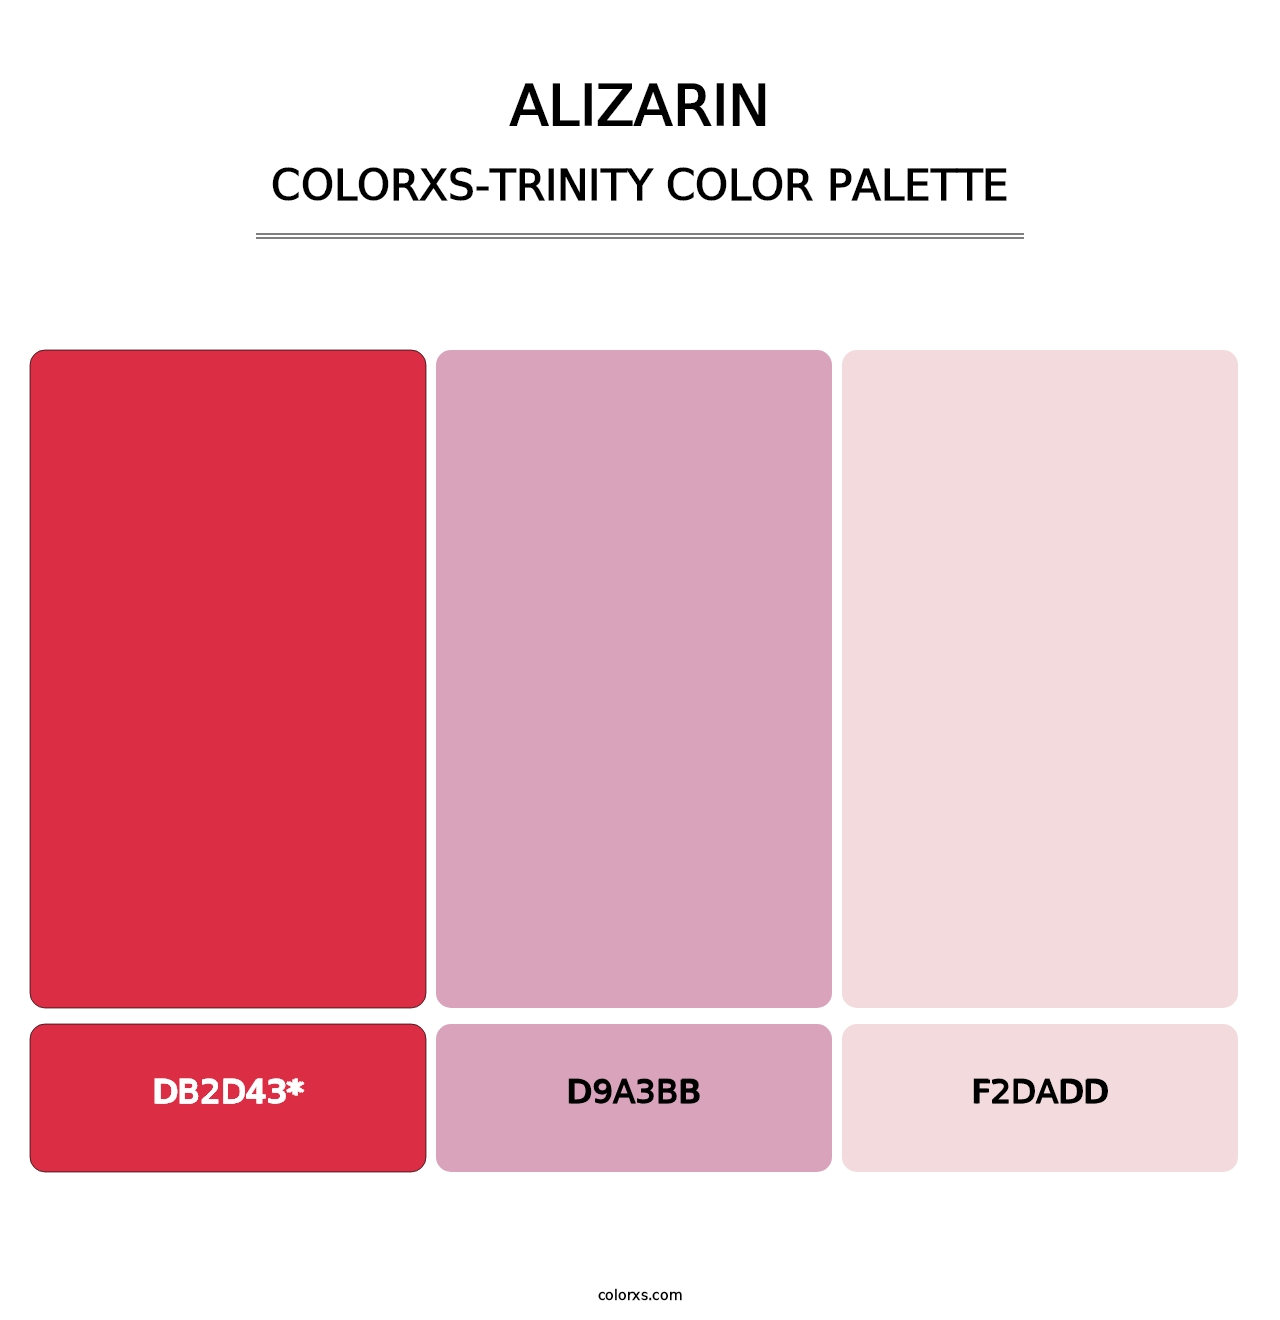 Alizarin - Colorxs Trinity Palette